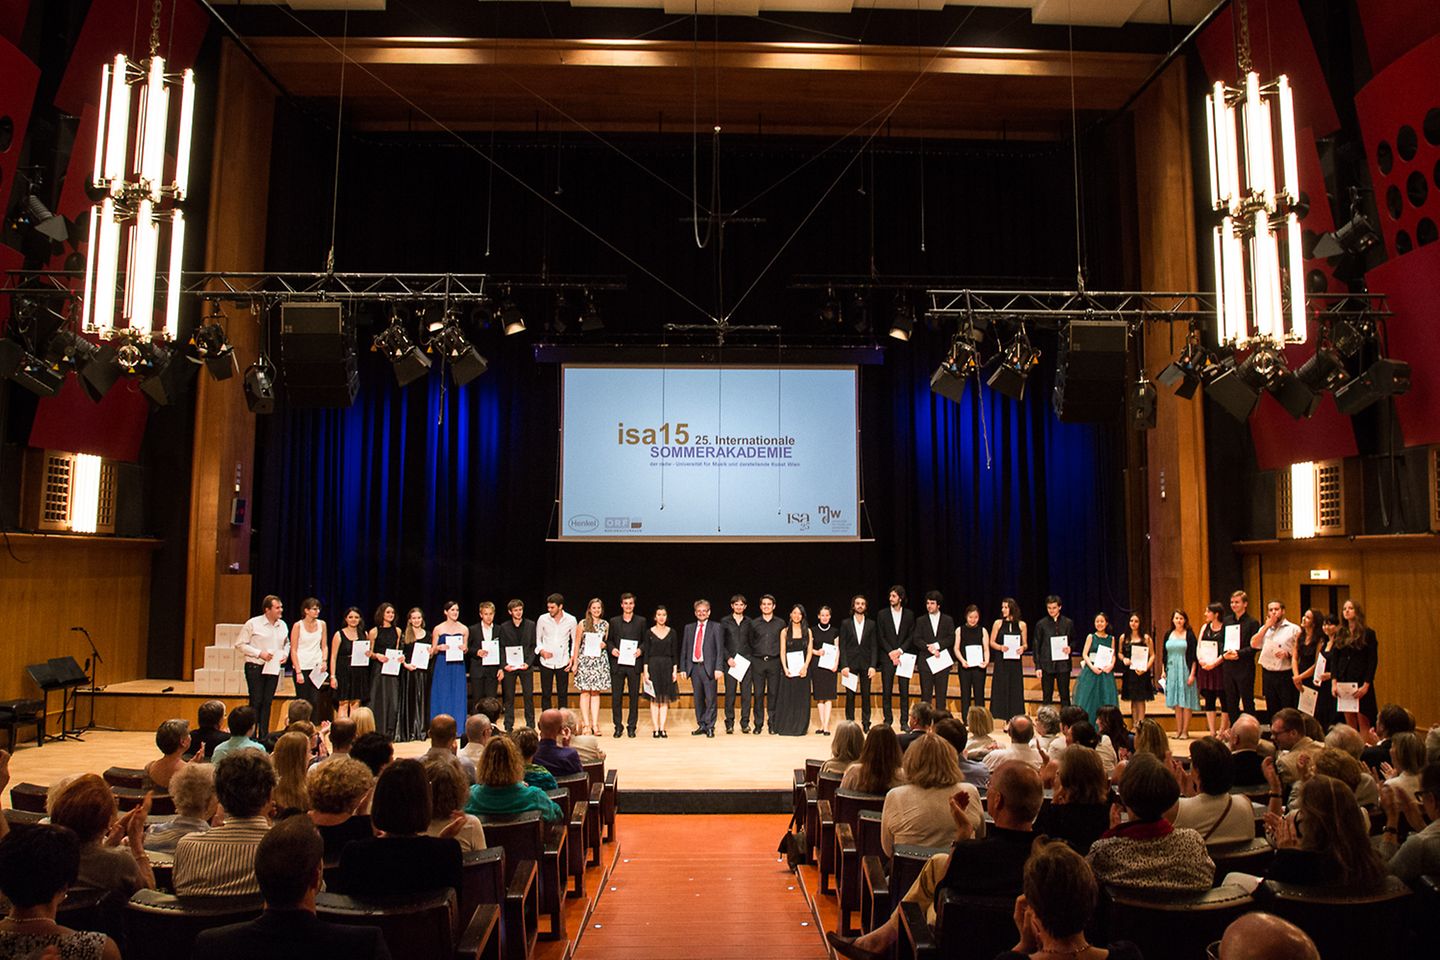 Bei dem Abschlusskonzert im ORF Radiokulturhaus Wien wurden die PreisträgerInnen der diesjährigen Internationalen Sommerakademie (isa) ausgezeichnet